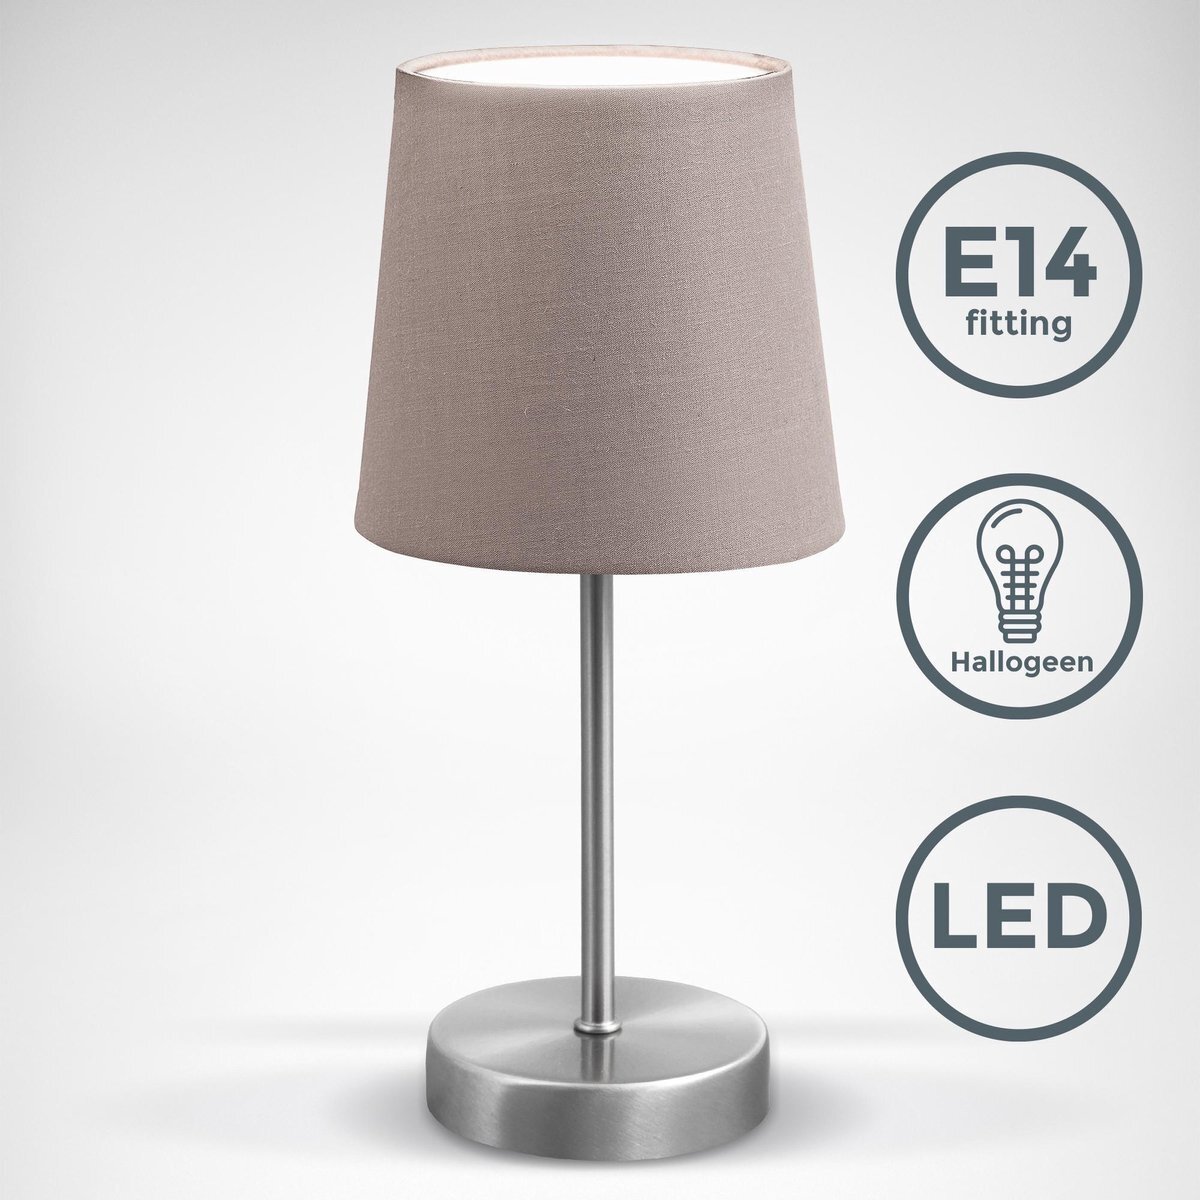 B.K.Licht - Taupe Tafellamp - klassieke - design - voor binnen - aan/uit schakelaar - slaapkamer - bedlamp - netstroom - stof - E14 fitting - excl. lichtbron